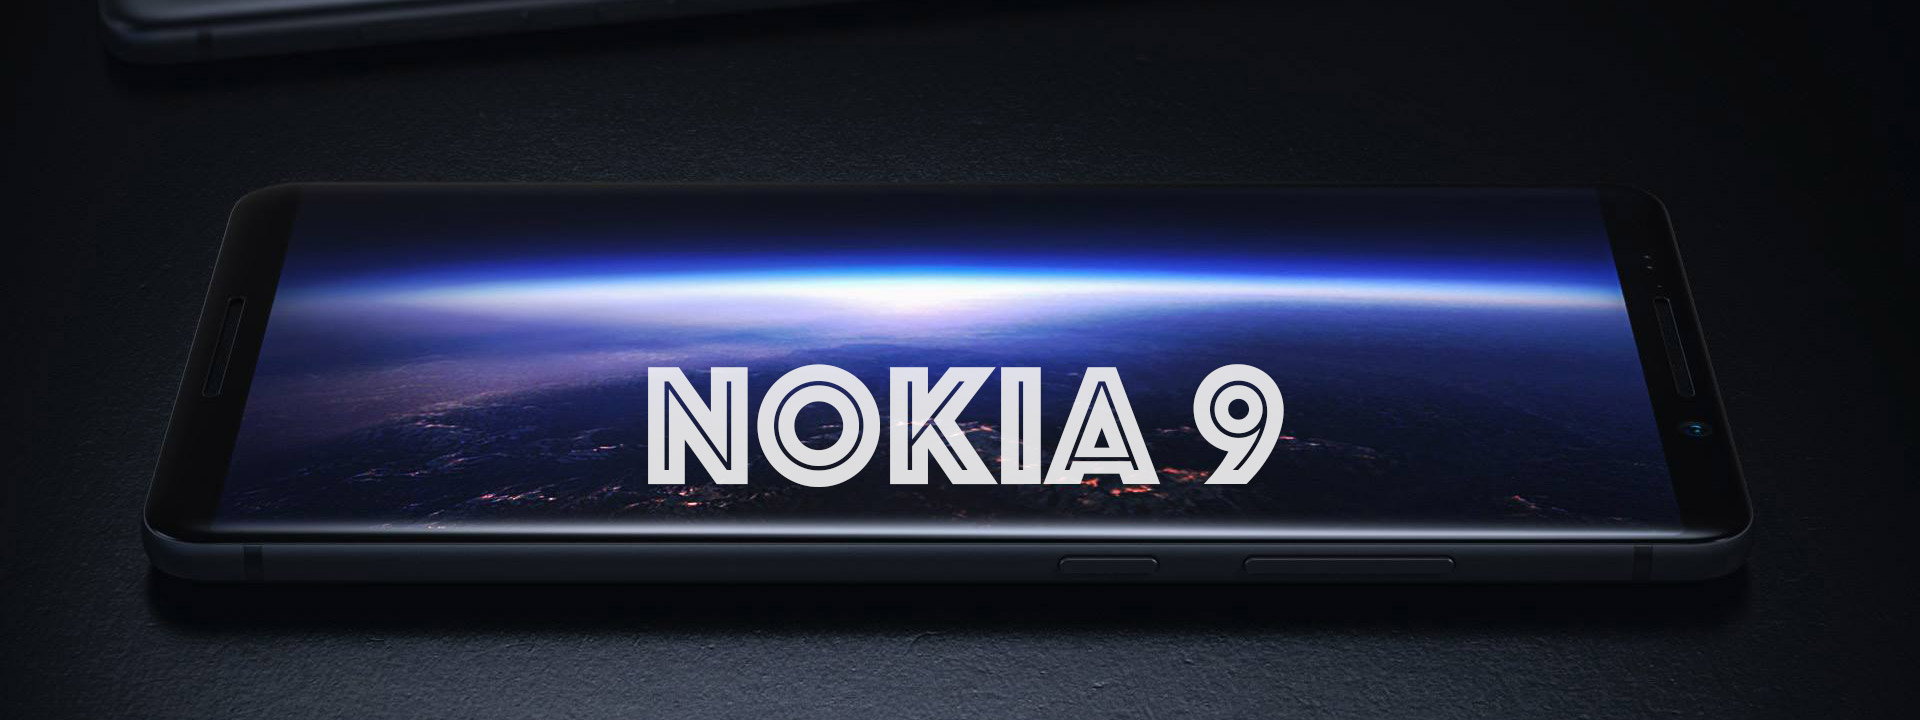 Nokia 9 bản 4GB RAM đã bị hủy, thay thế bằng bản 6GB hoặc 8GB?